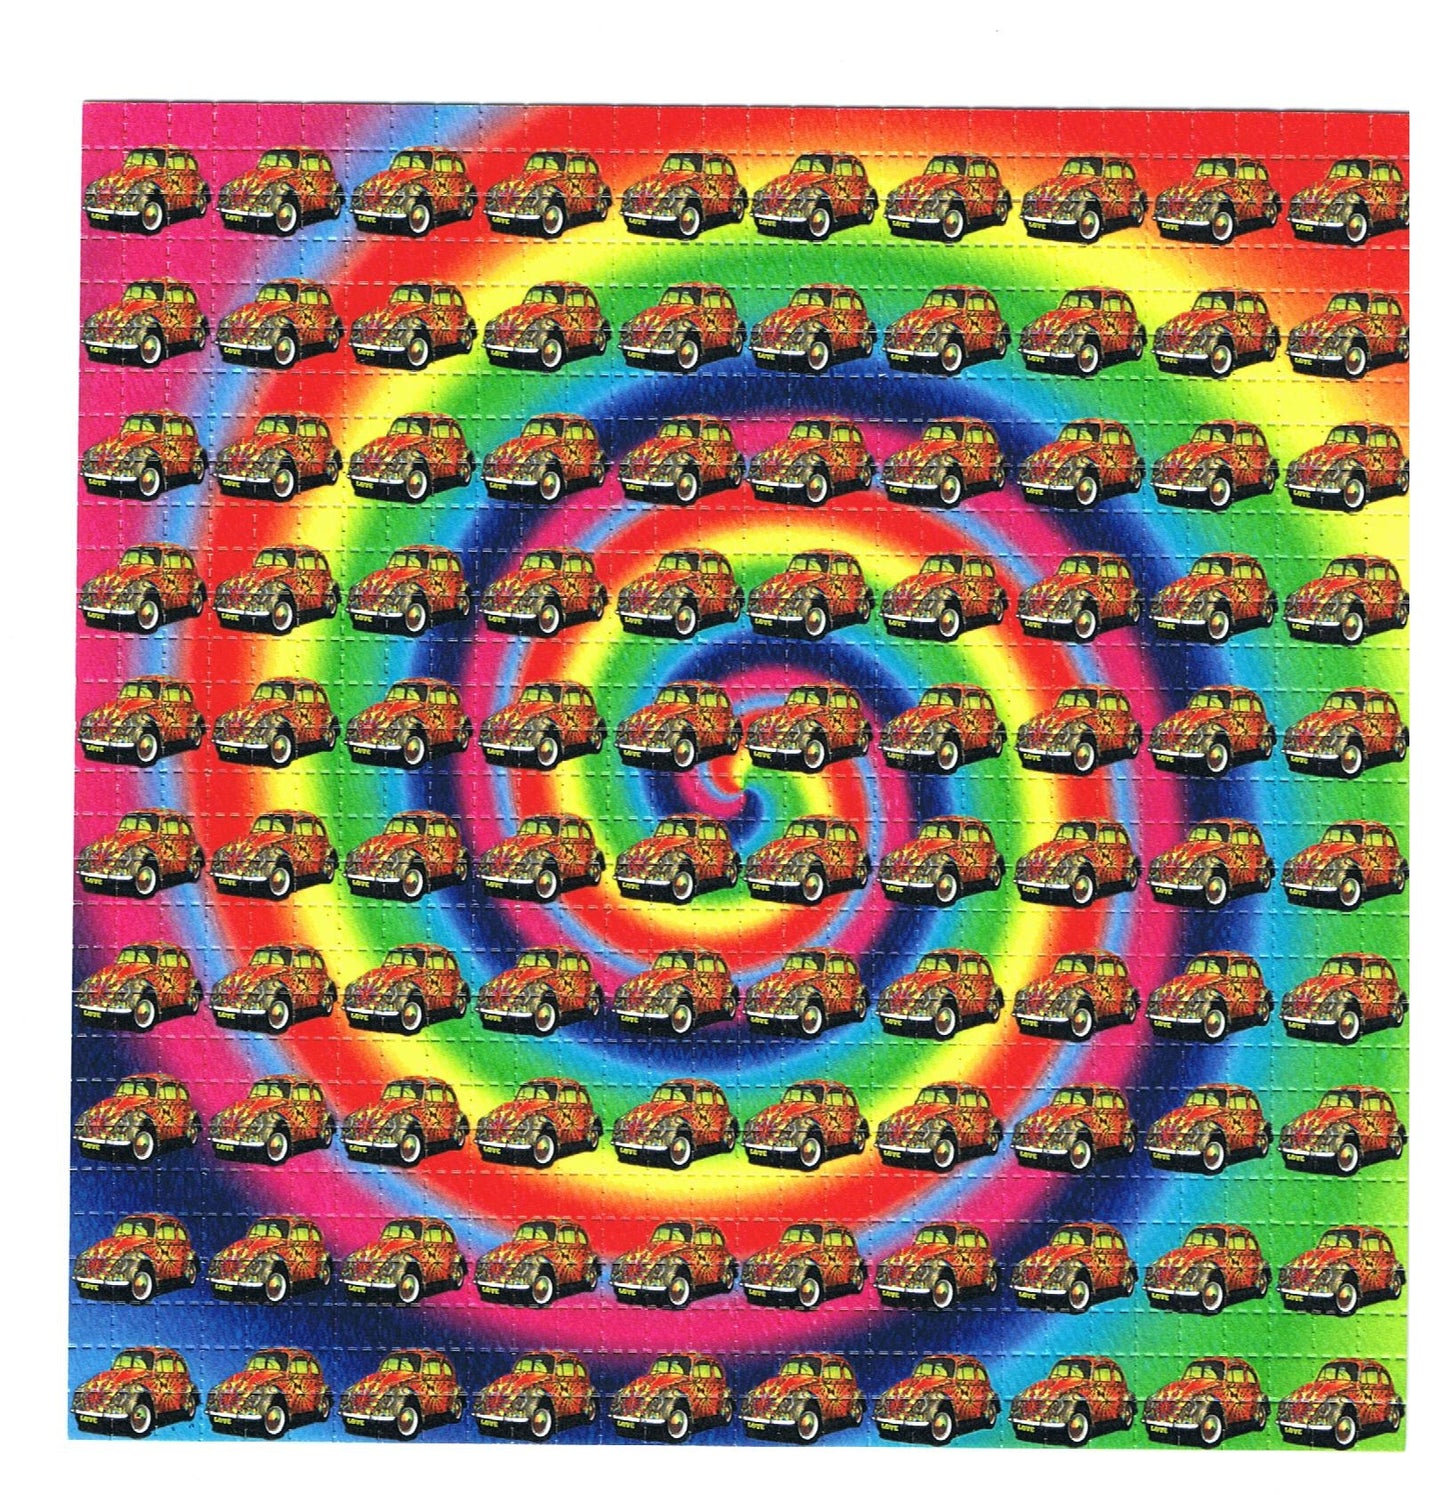 VW Beetle Fractal LSD blotter art print